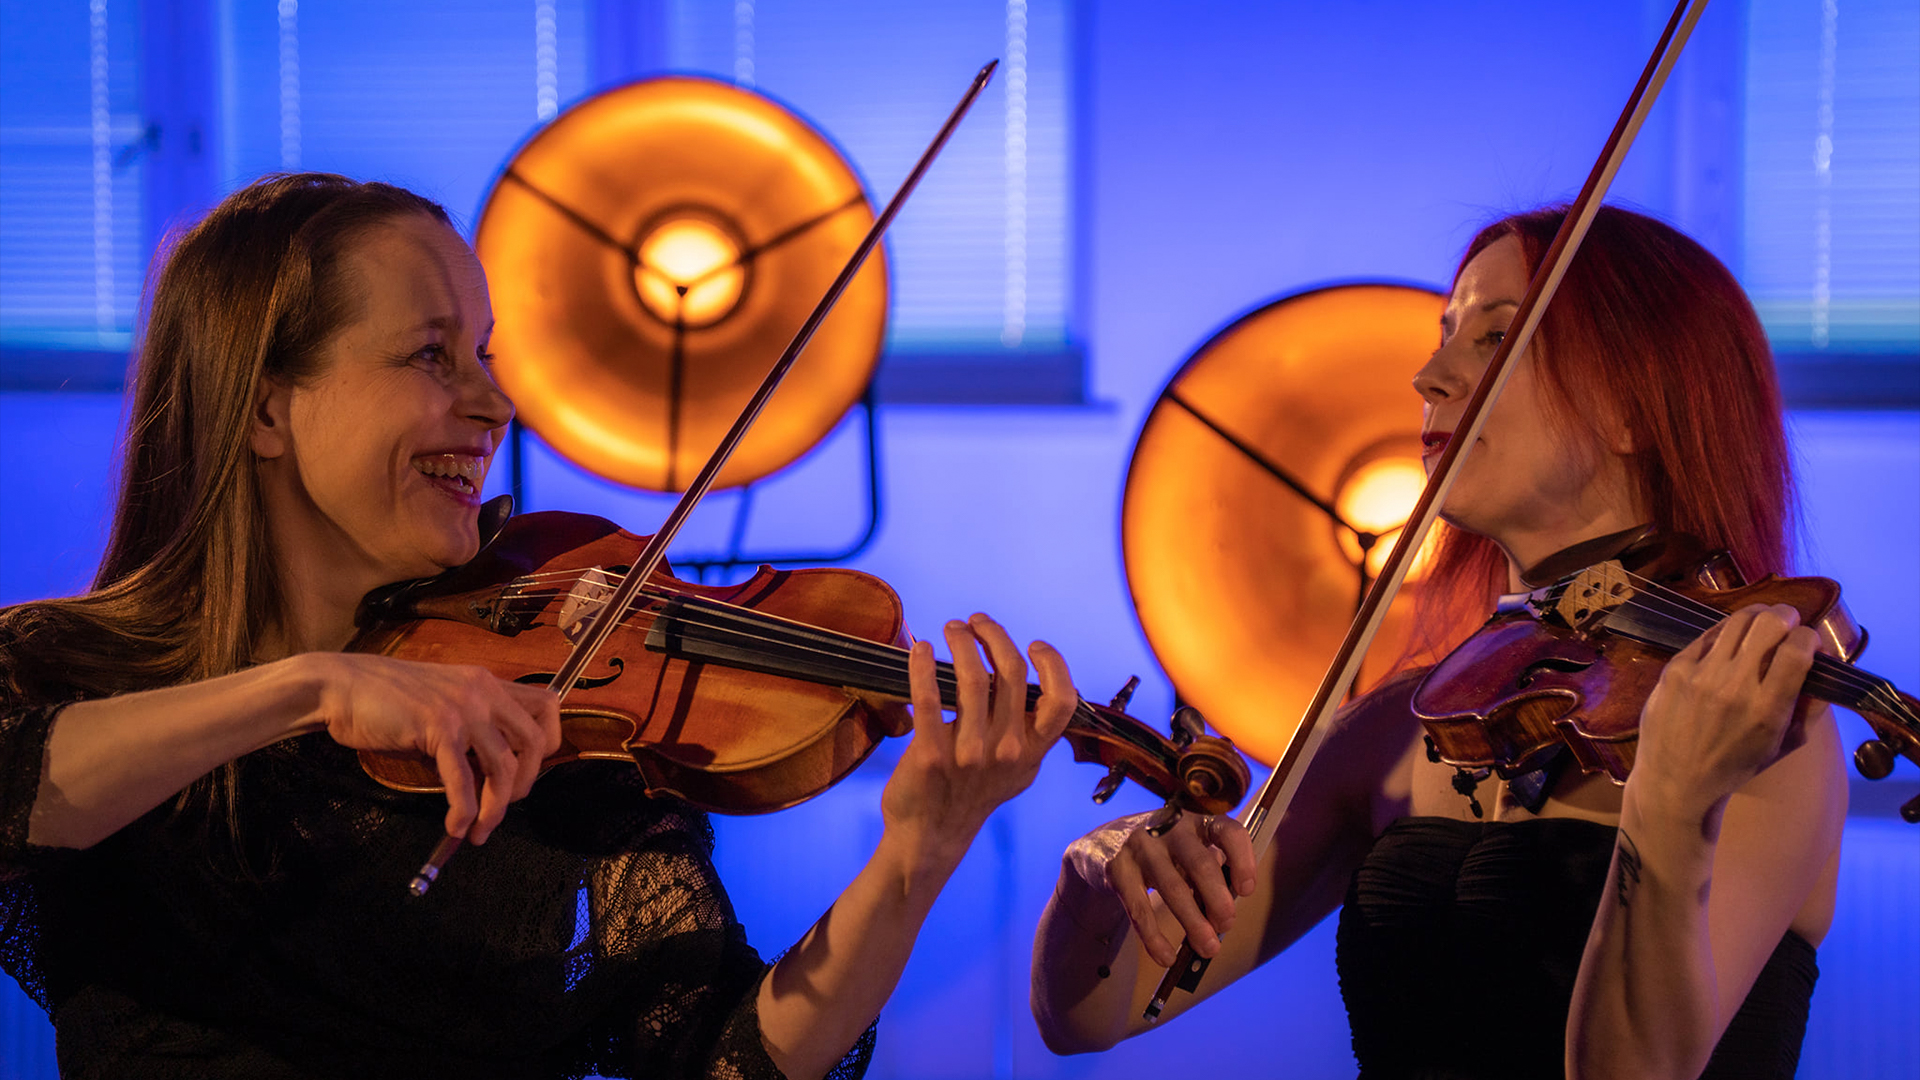 Muusikot Rista Tuura ja Elina Kivistö soittamassa viulua hymyillen.